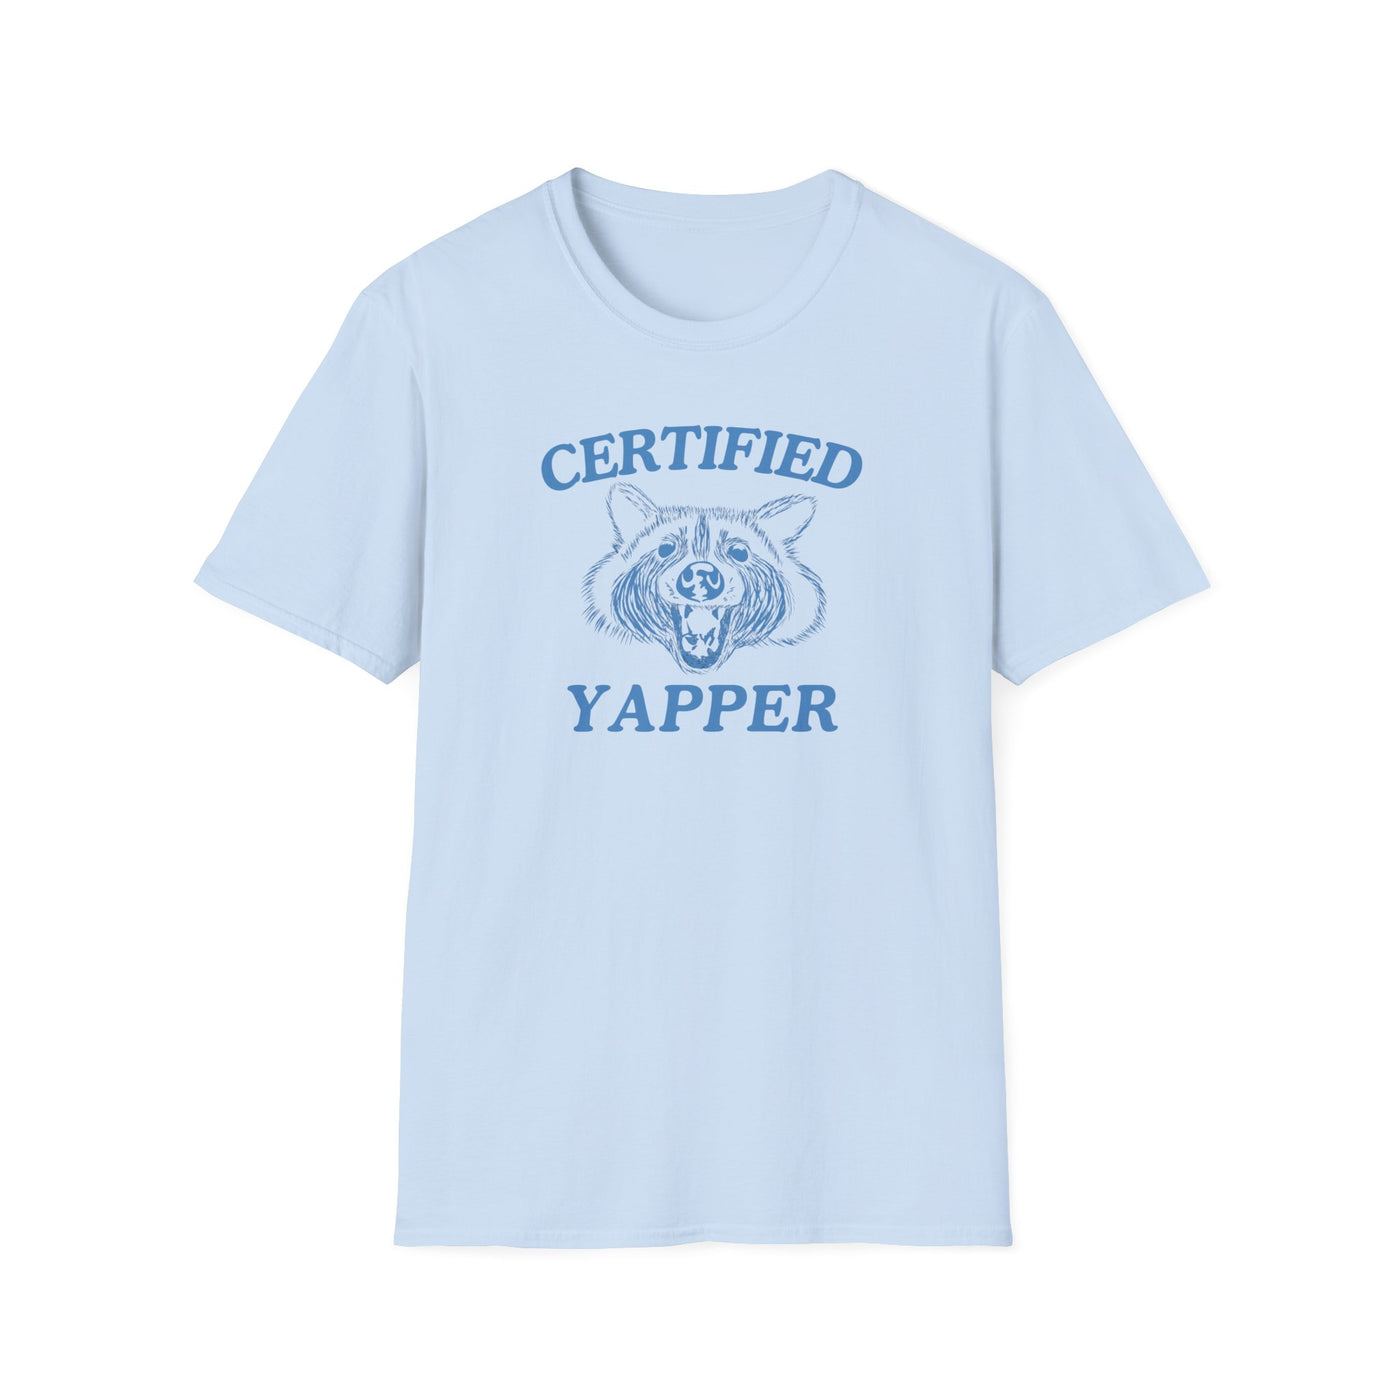 Certified Yapper